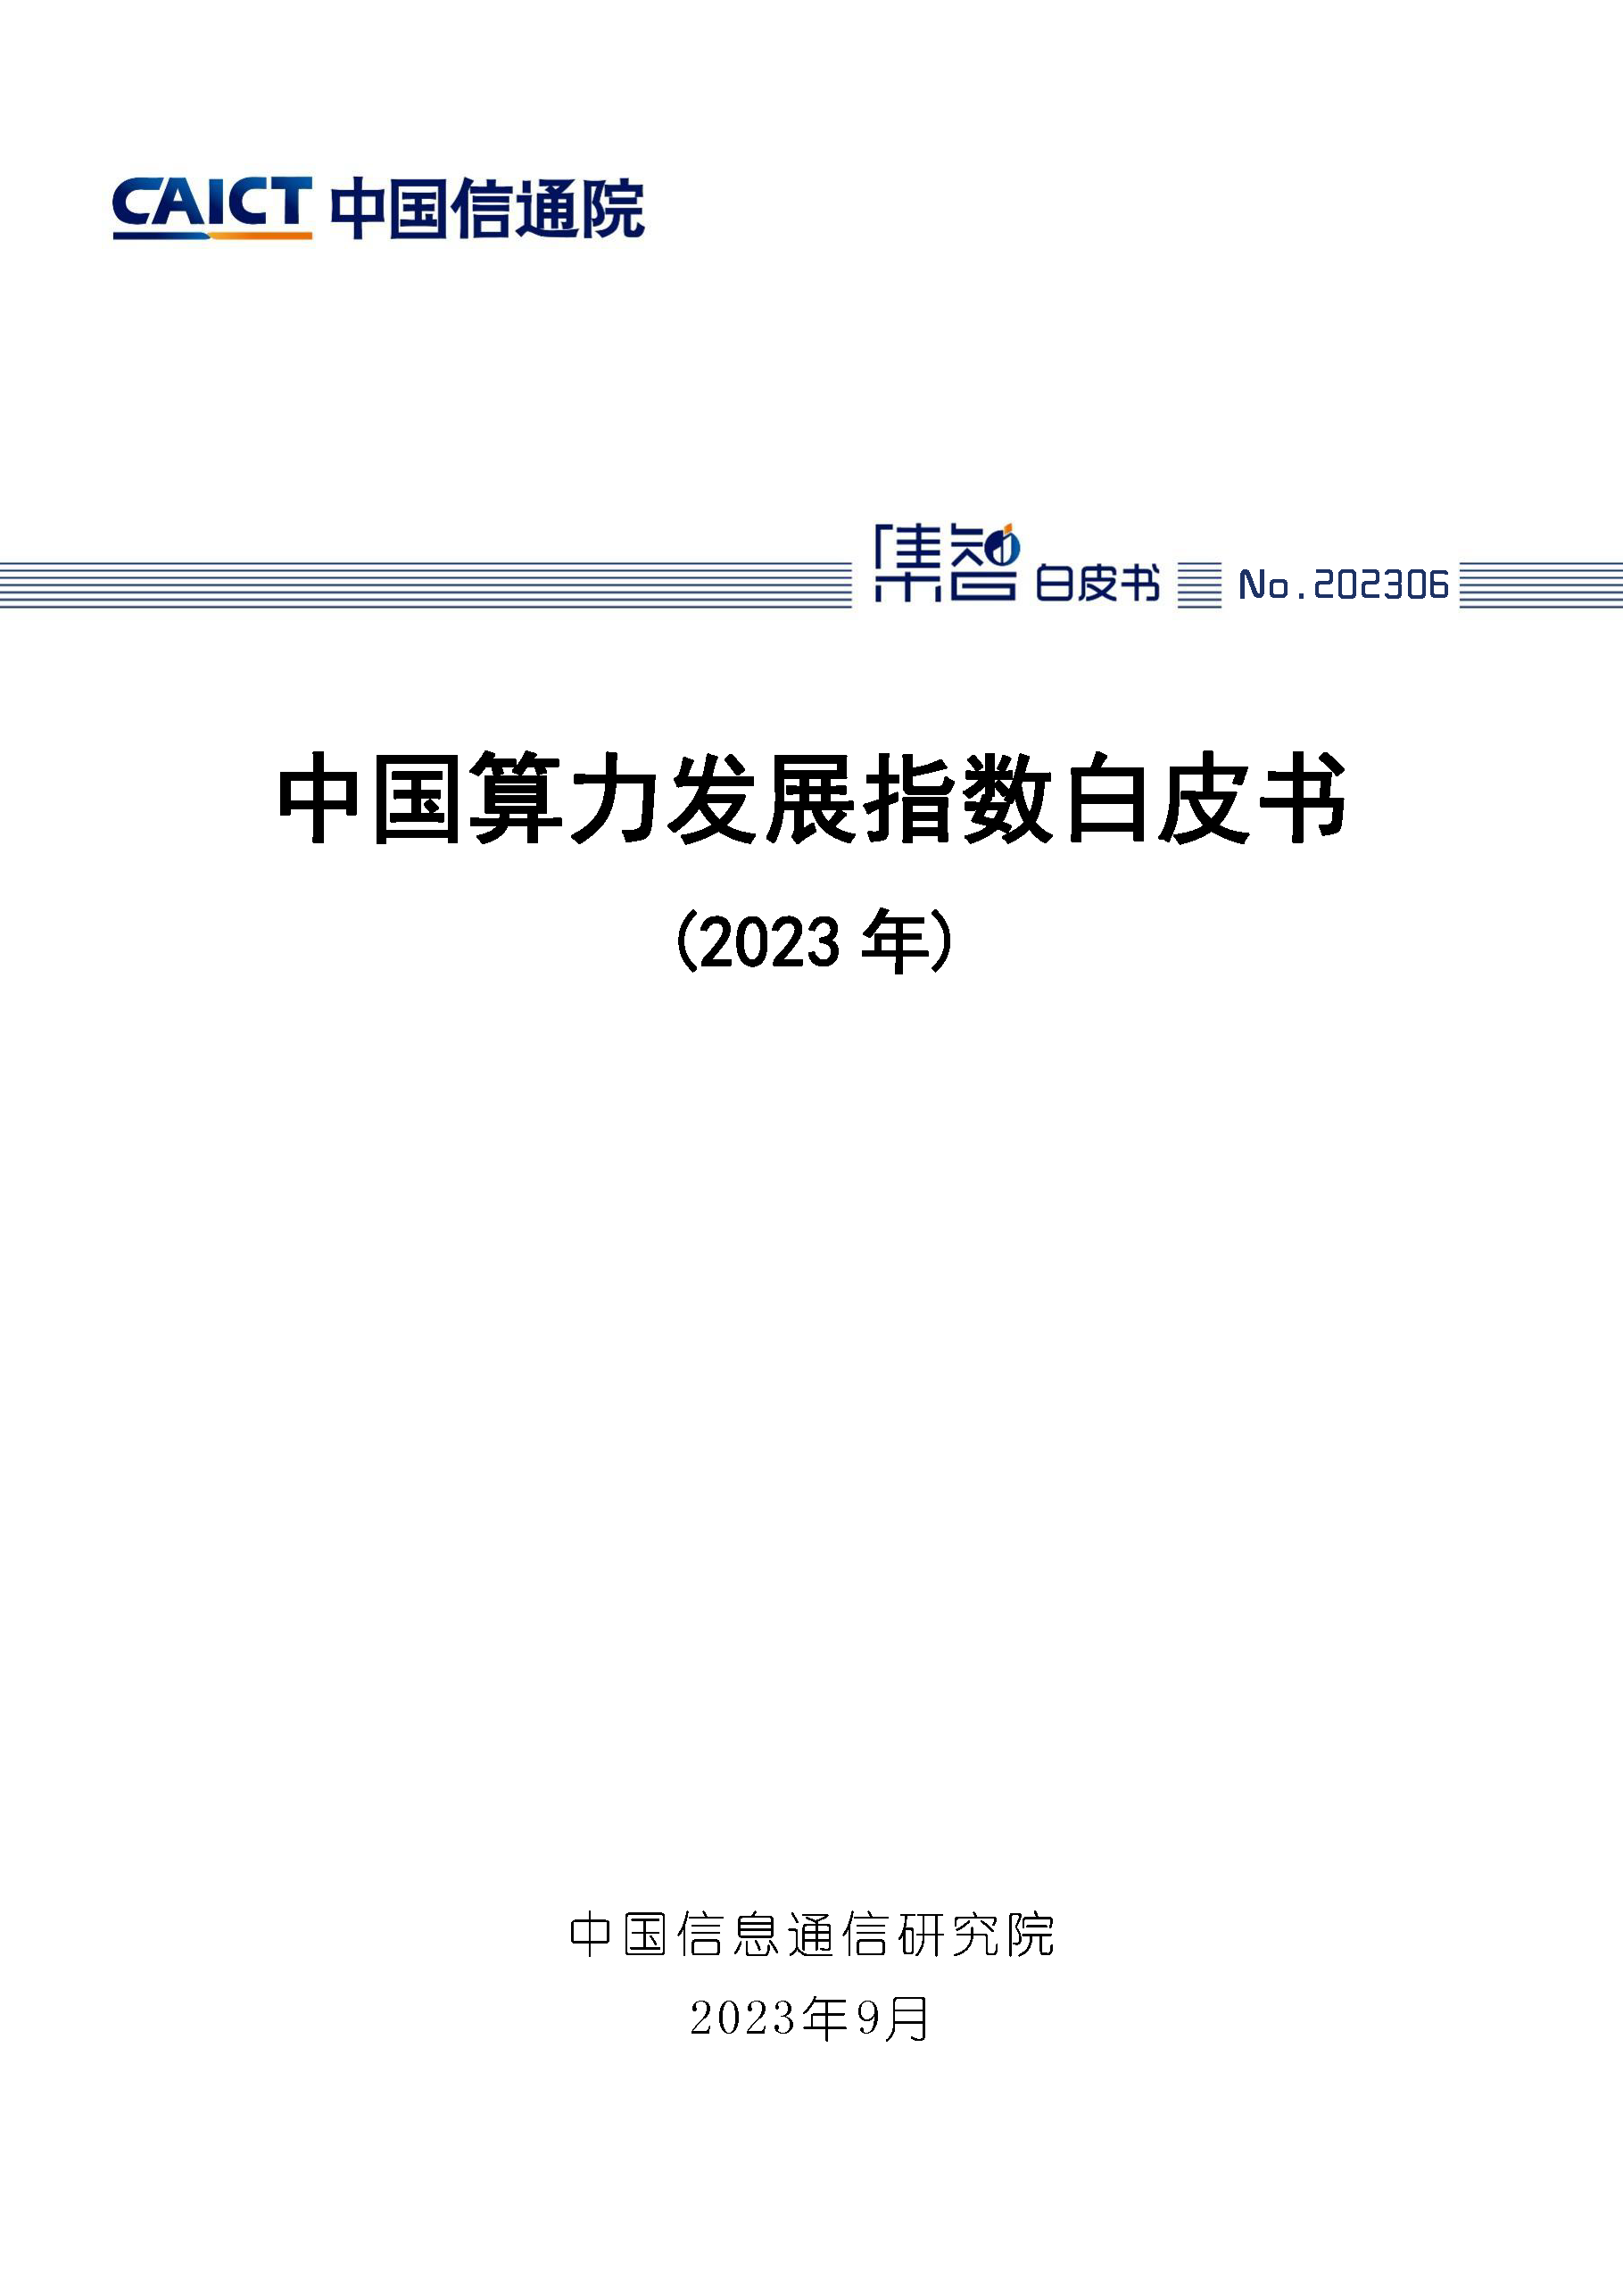 中国算力发展指数白皮书（2023年）首页.png